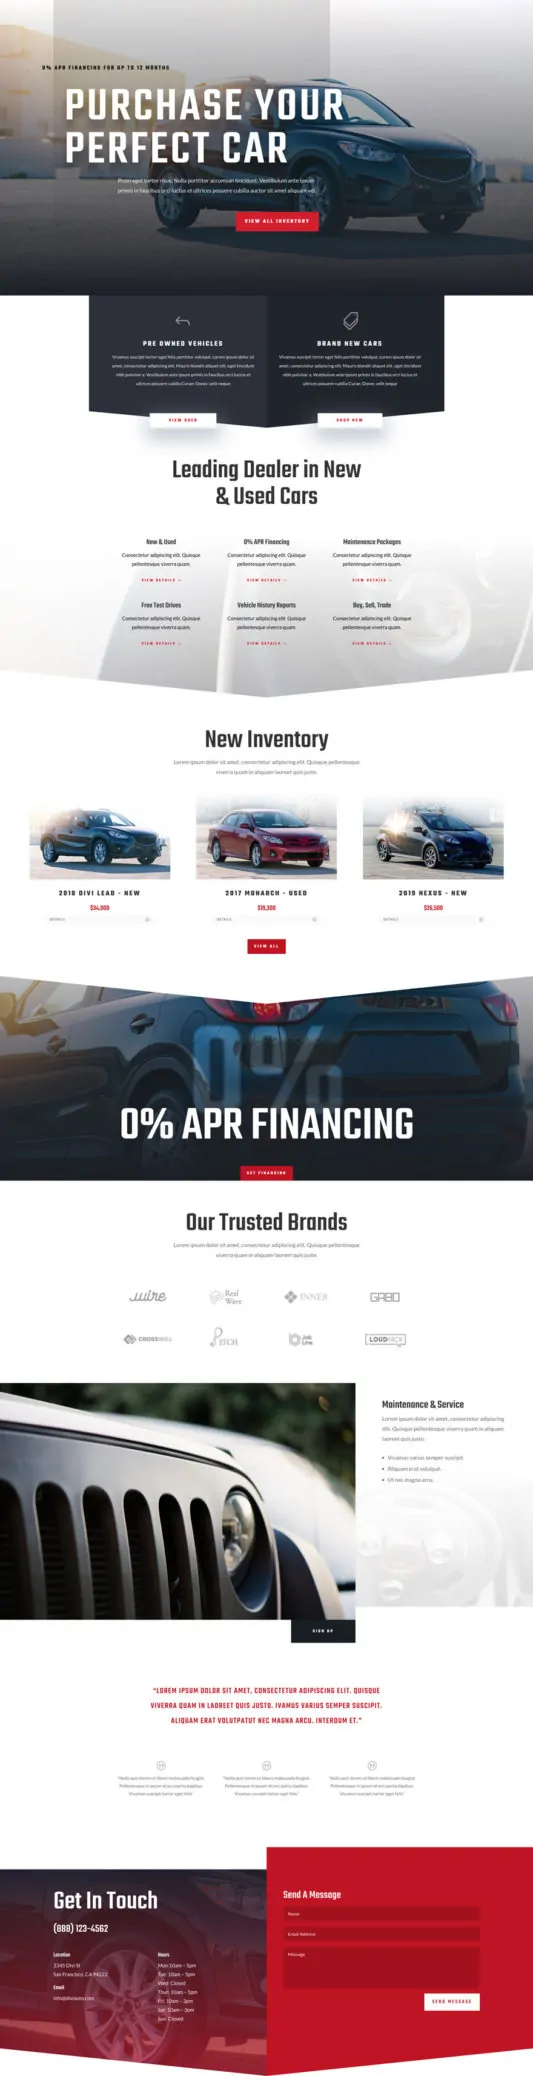 Car Dealer Web Design 5